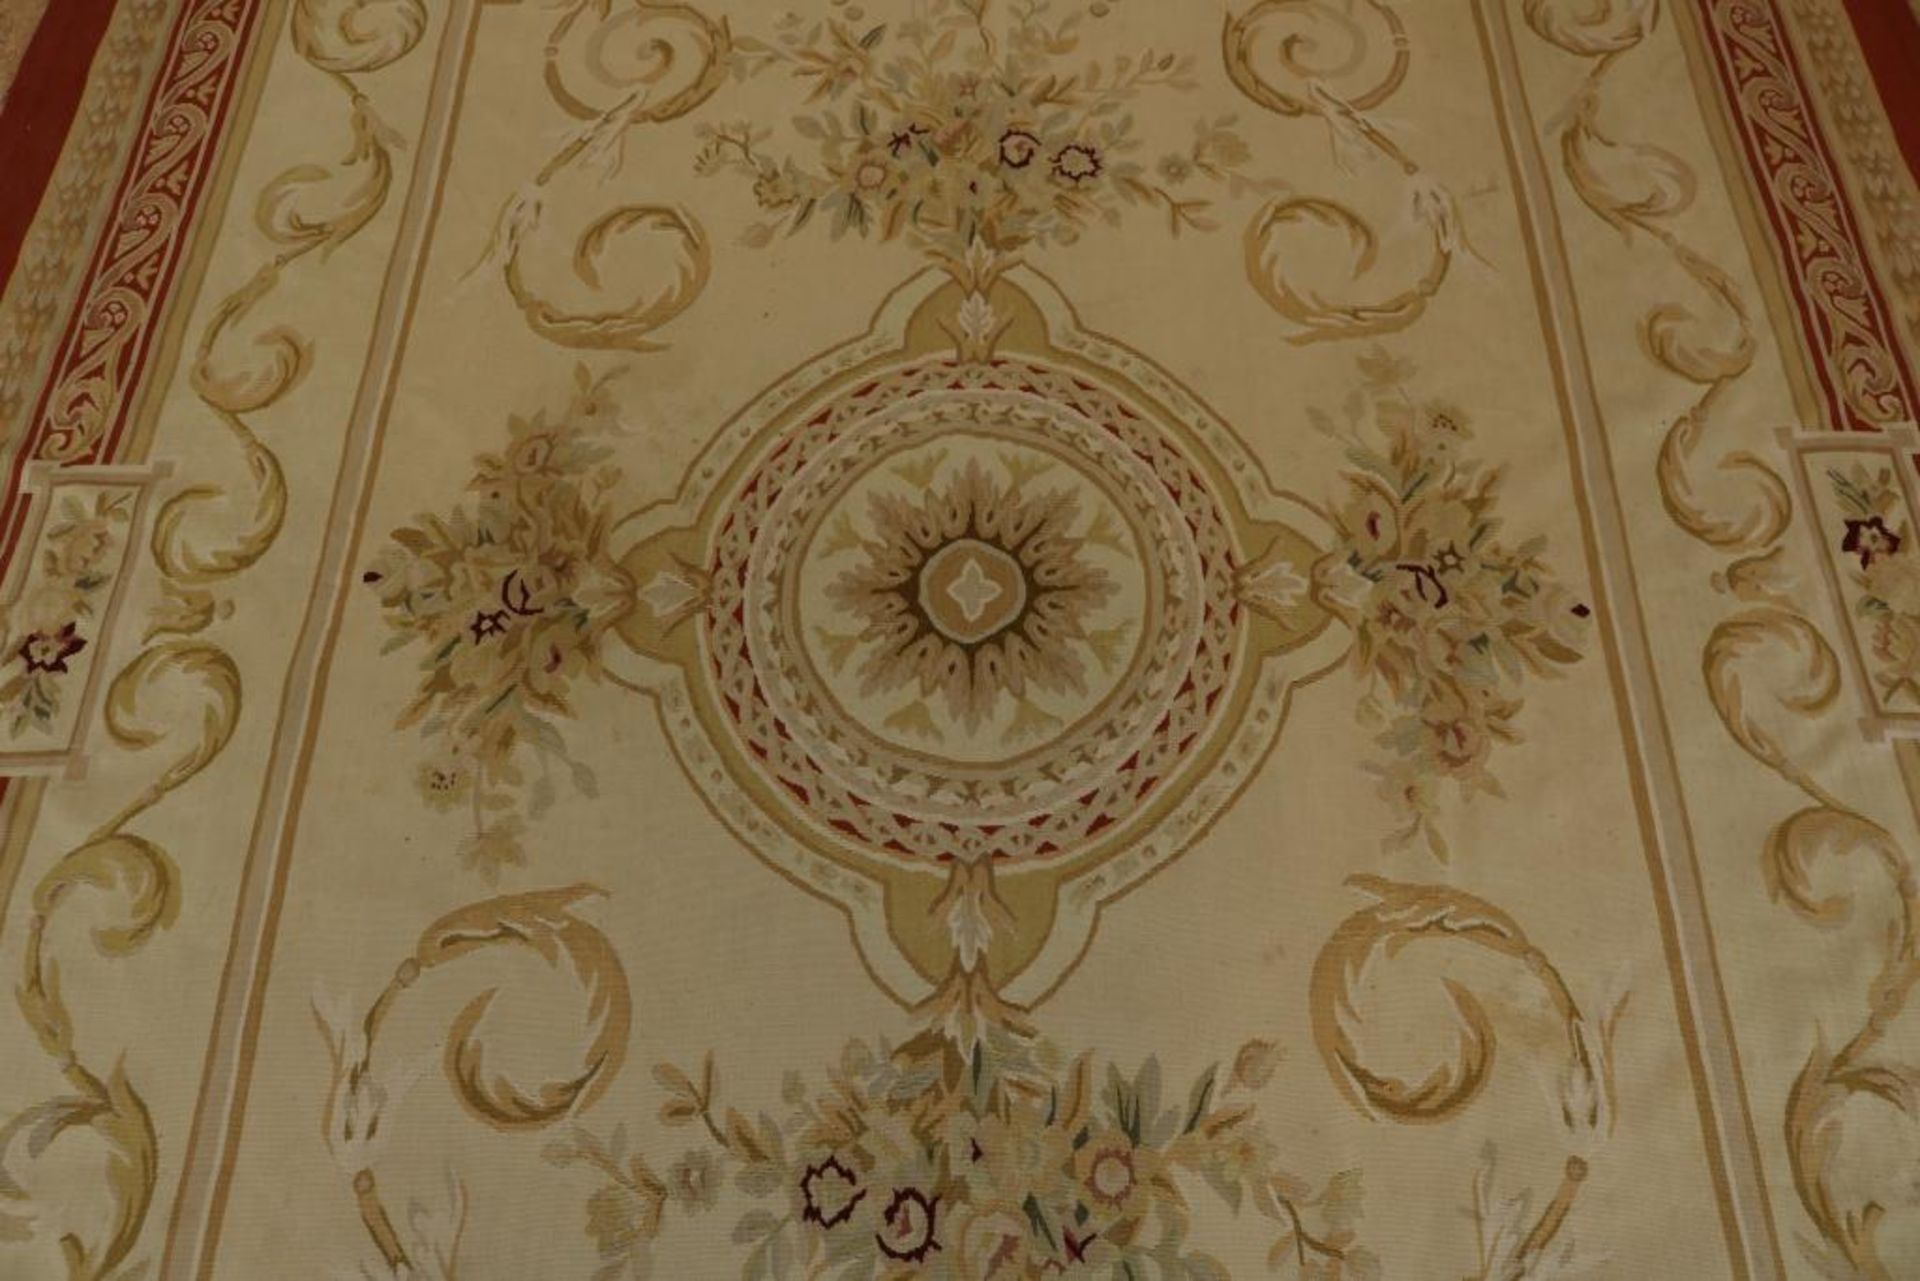 Aubusson wandkleed met floraal decor - Bild 2 aus 5